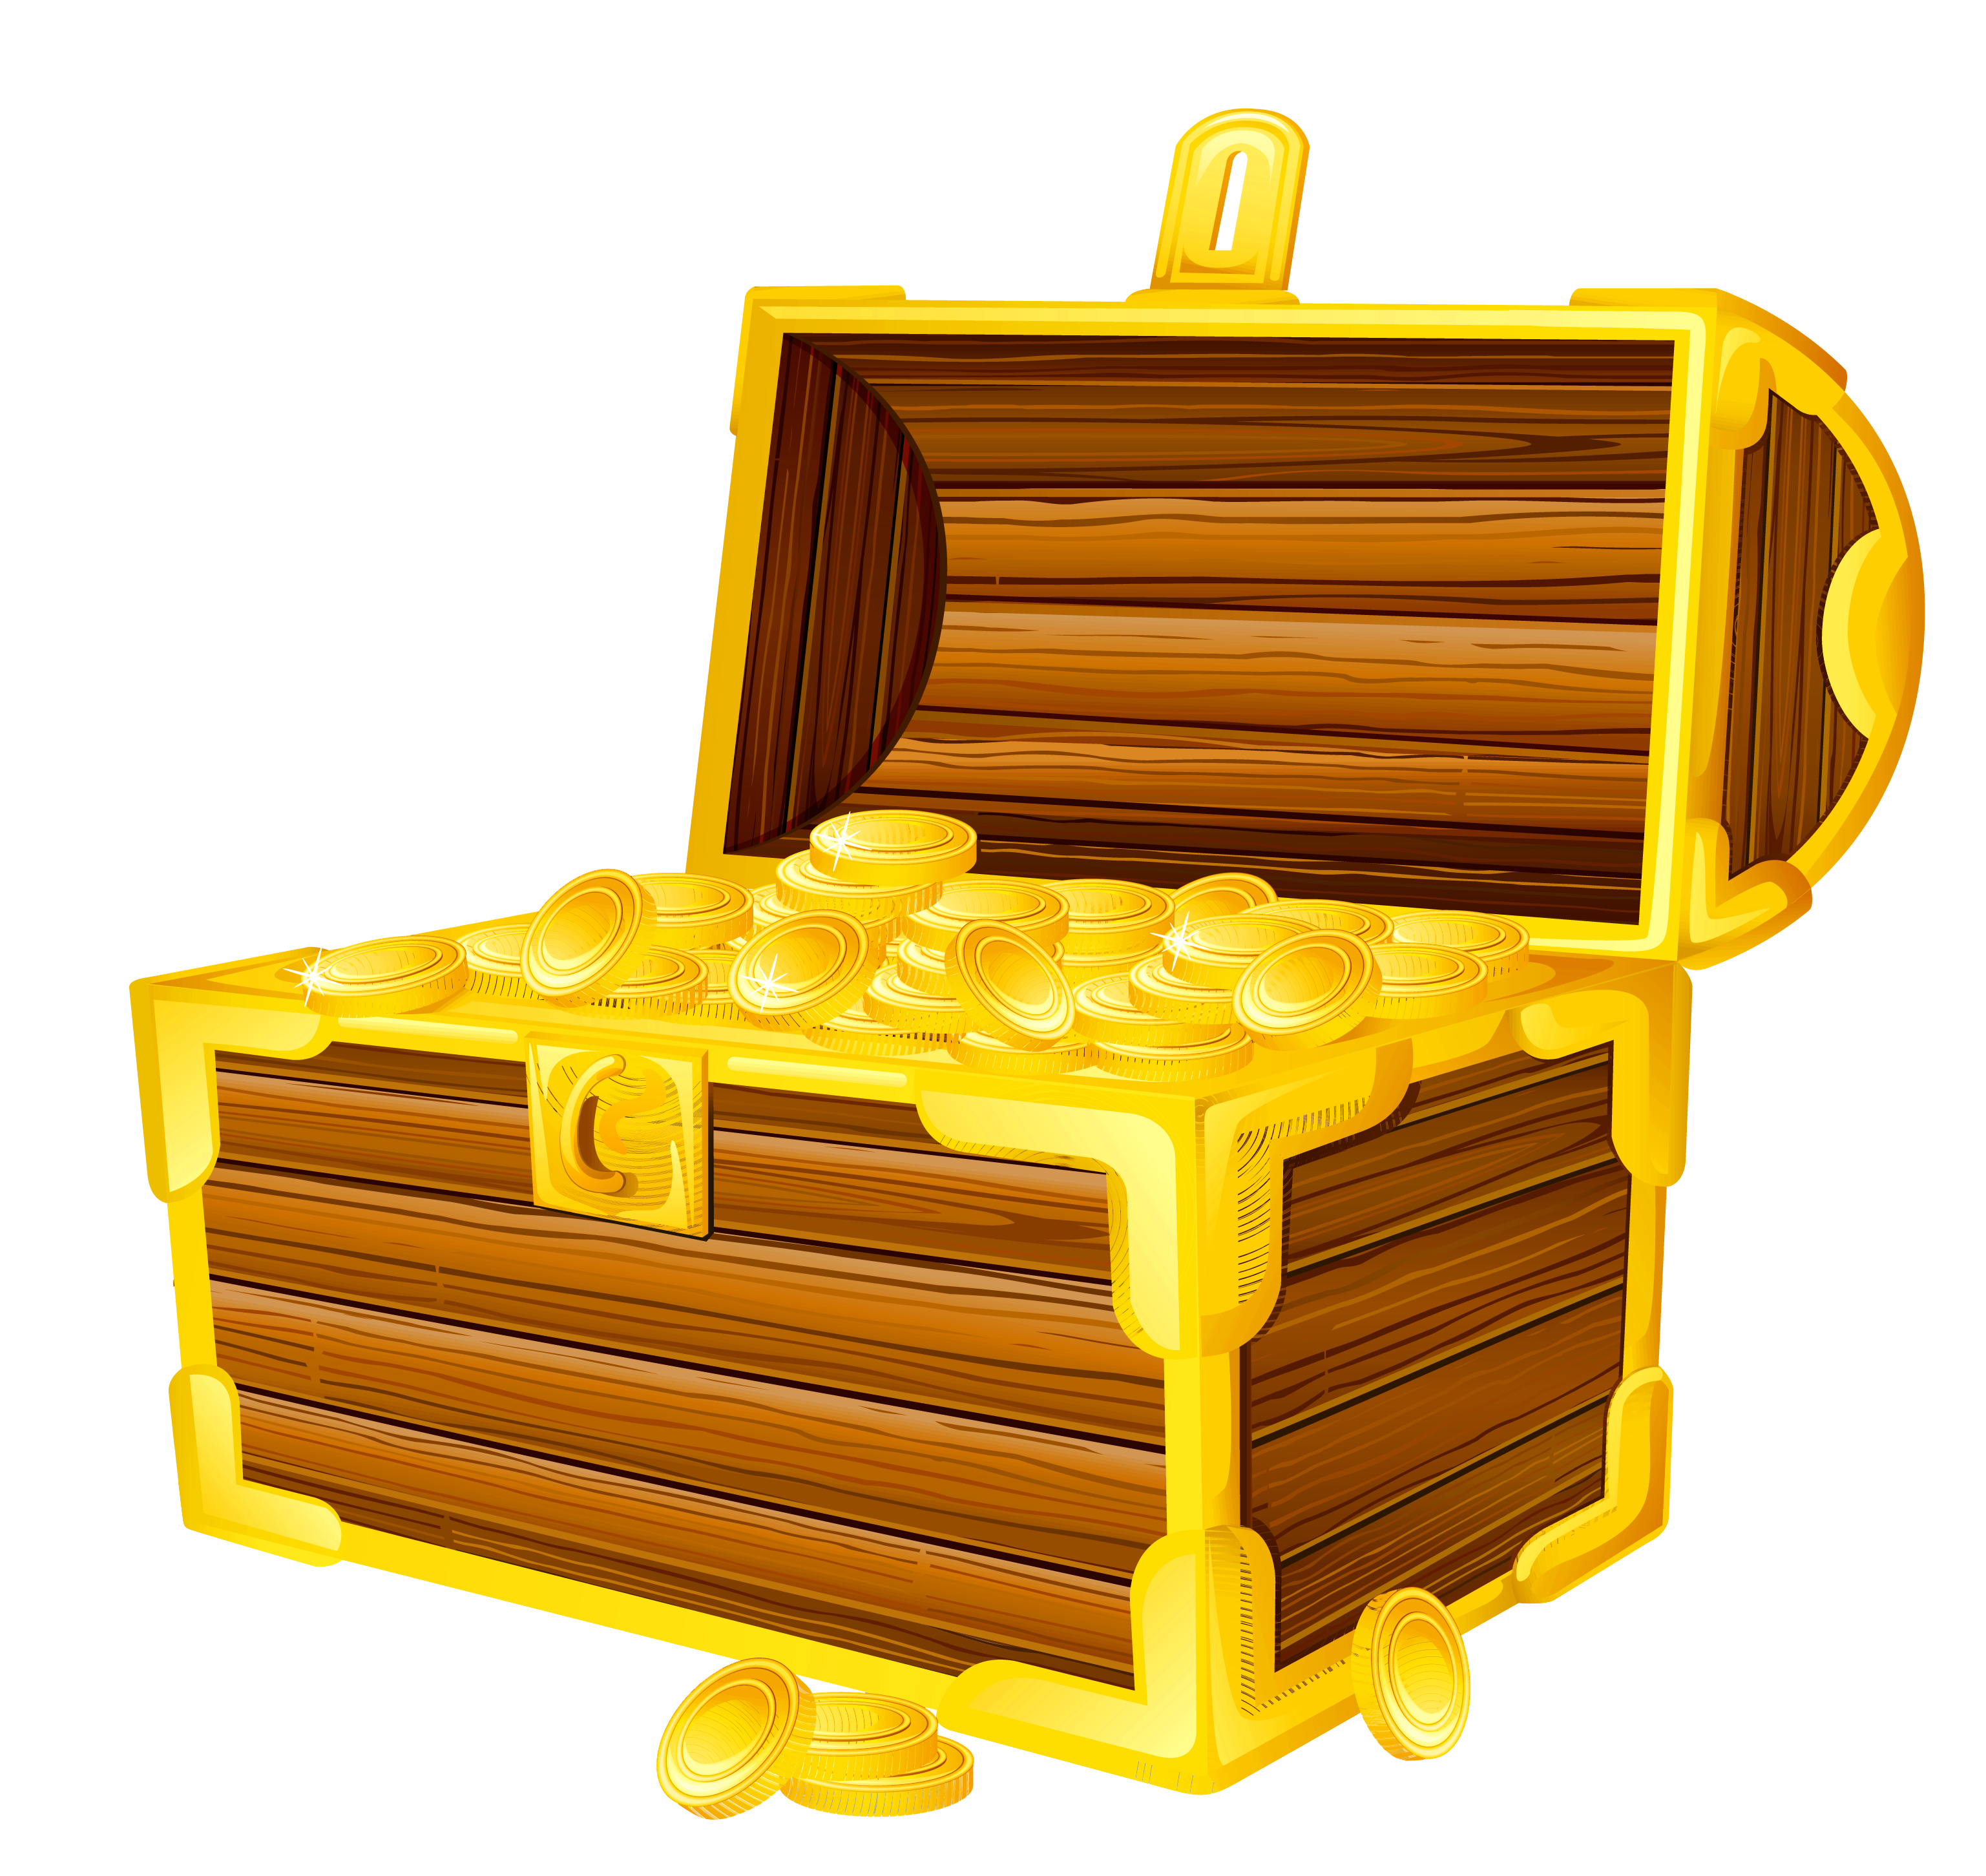 Treasure chest picture cliparts. Treasure chest image clipart